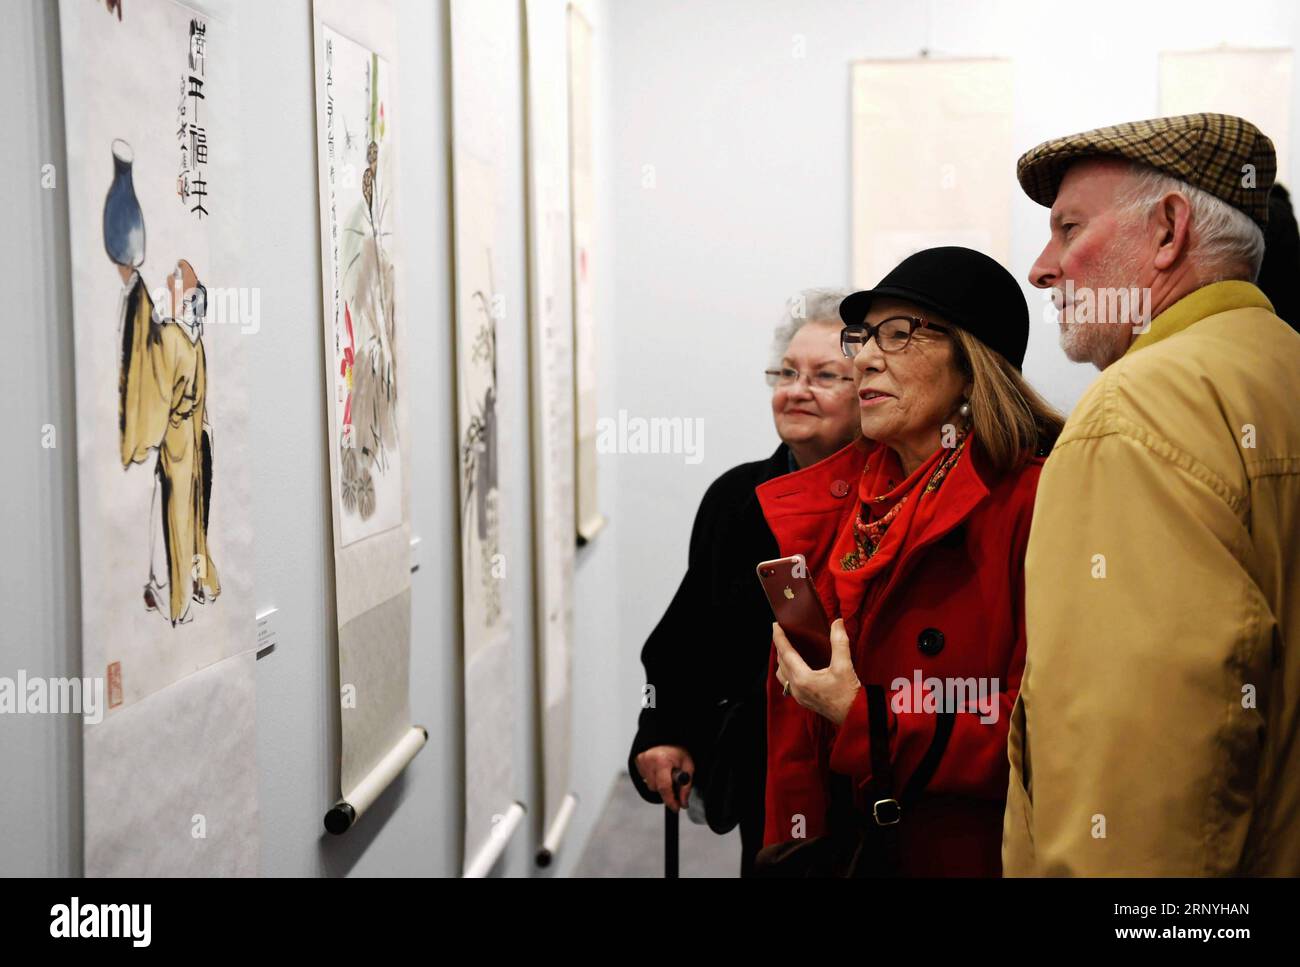 (180321) -- MALAGA, le 21 mars 2018 -- les visiteurs regardent les œuvres de l'artiste chinois Qi Baishi lors d'une exposition à Malaga, Espagne, le 20 mars 2018.) (rh) ESPAGNE-MALAGA-EXPOSITION GuoxQiuda PUBLICATIONxNOTxINxCHN Banque D'Images